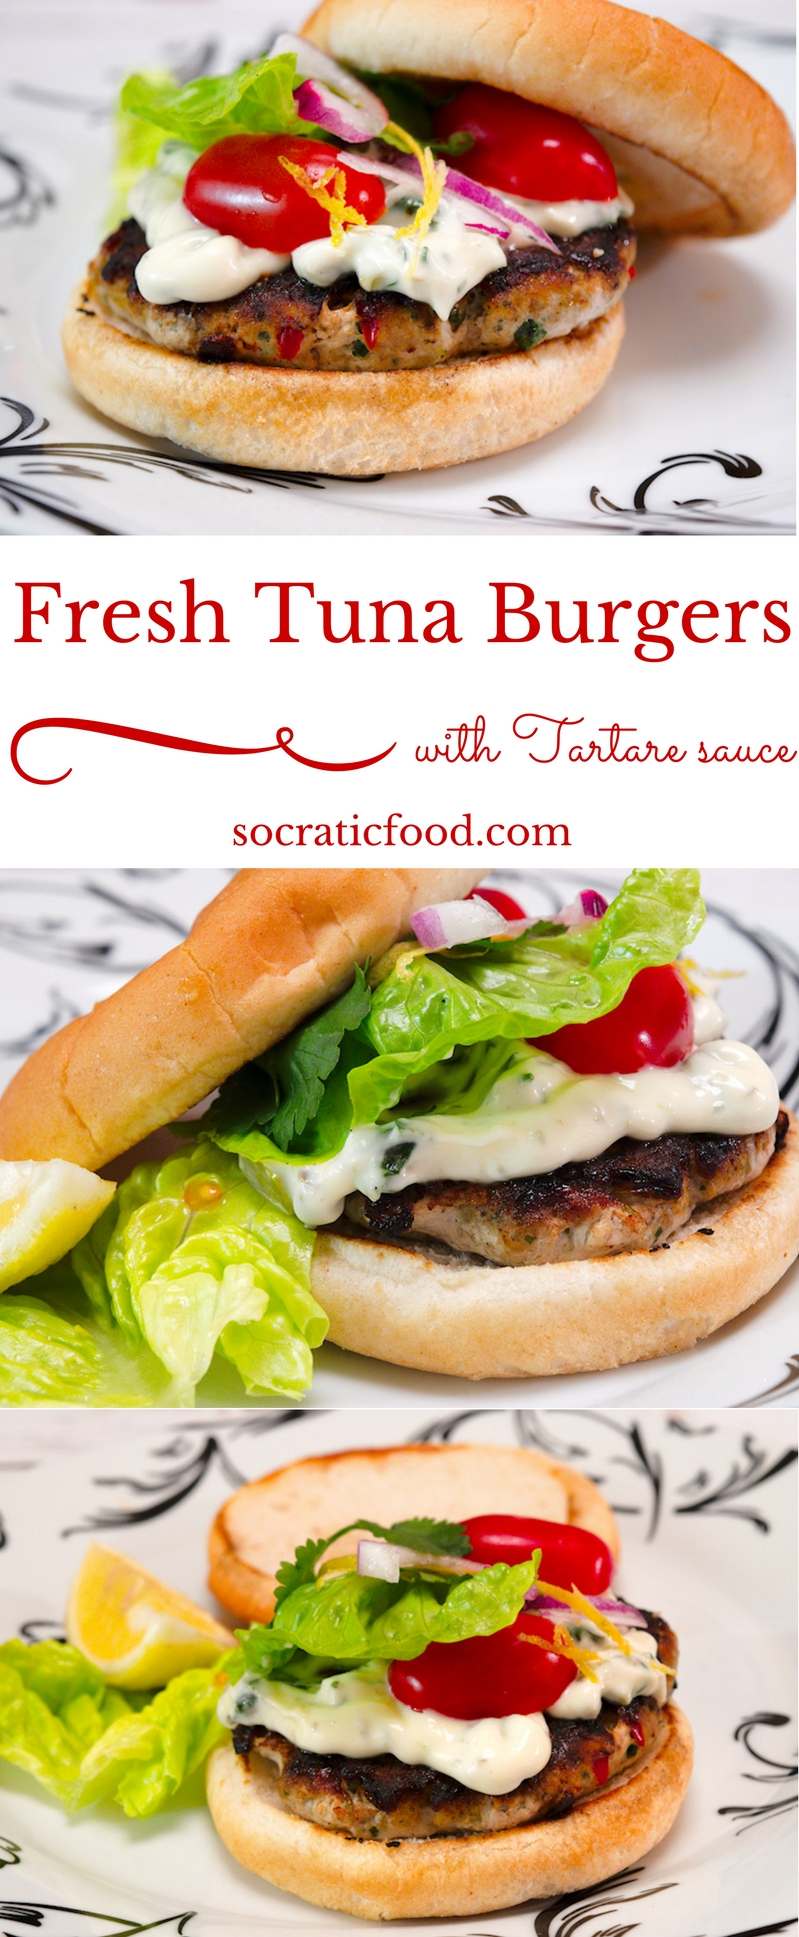 Fresh Tuna Burgers with Tartare Sauce